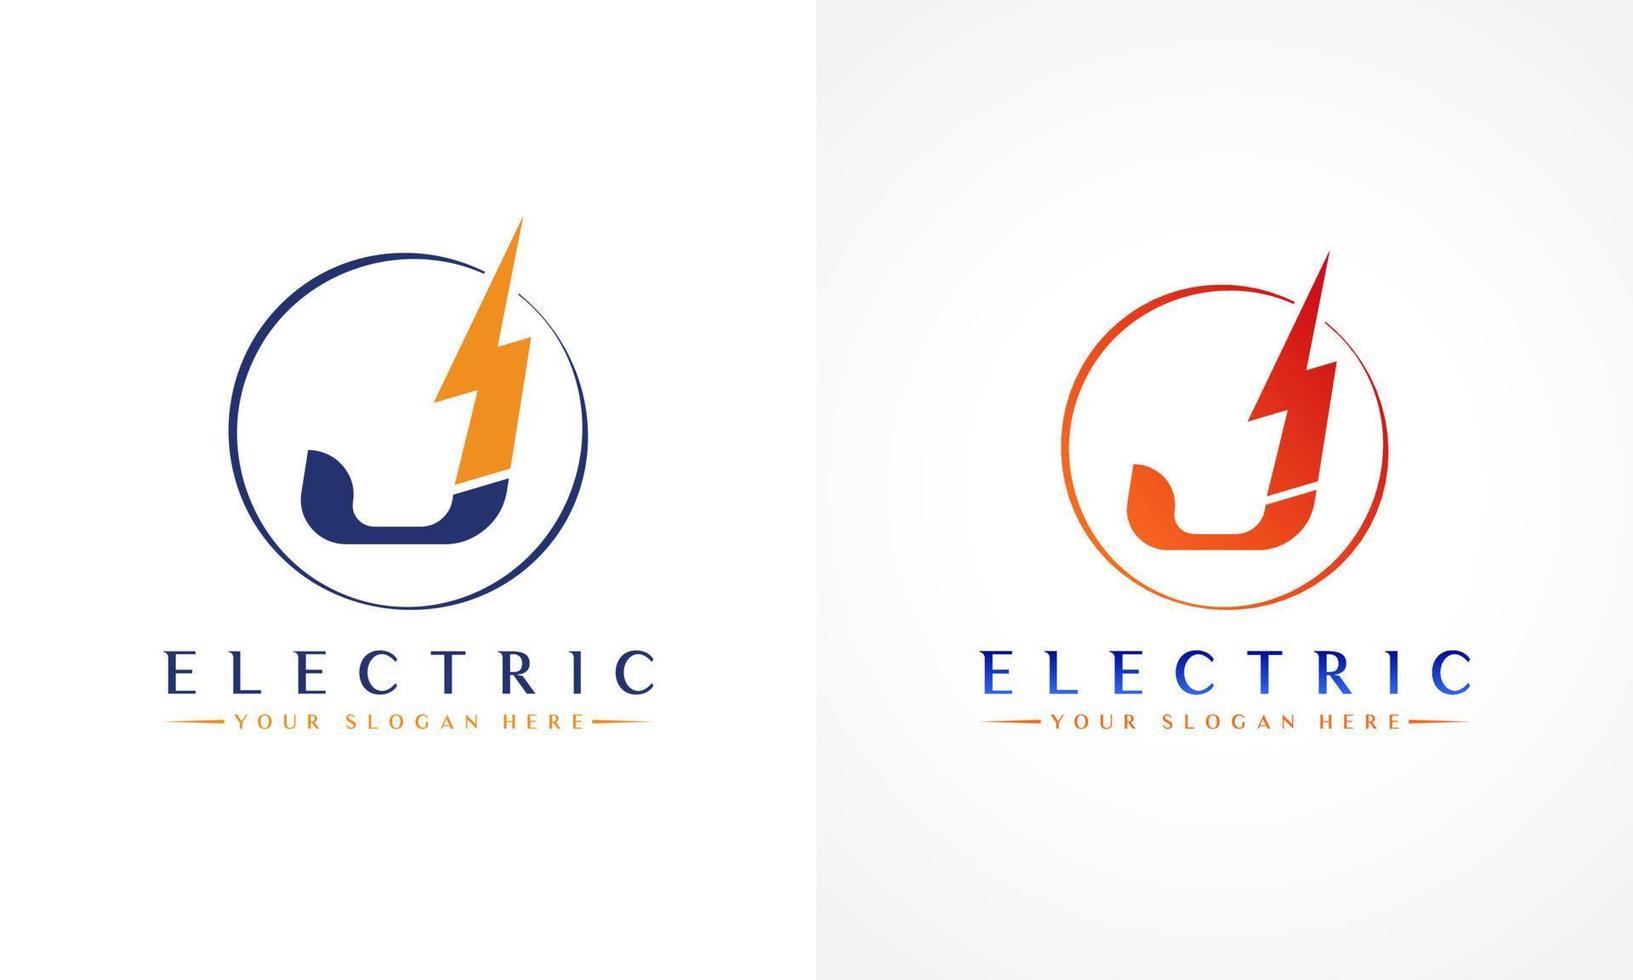 j brev logotyp med blixt- åska bult vektor design. elektrisk bult brev j logotyp vektor illustration.